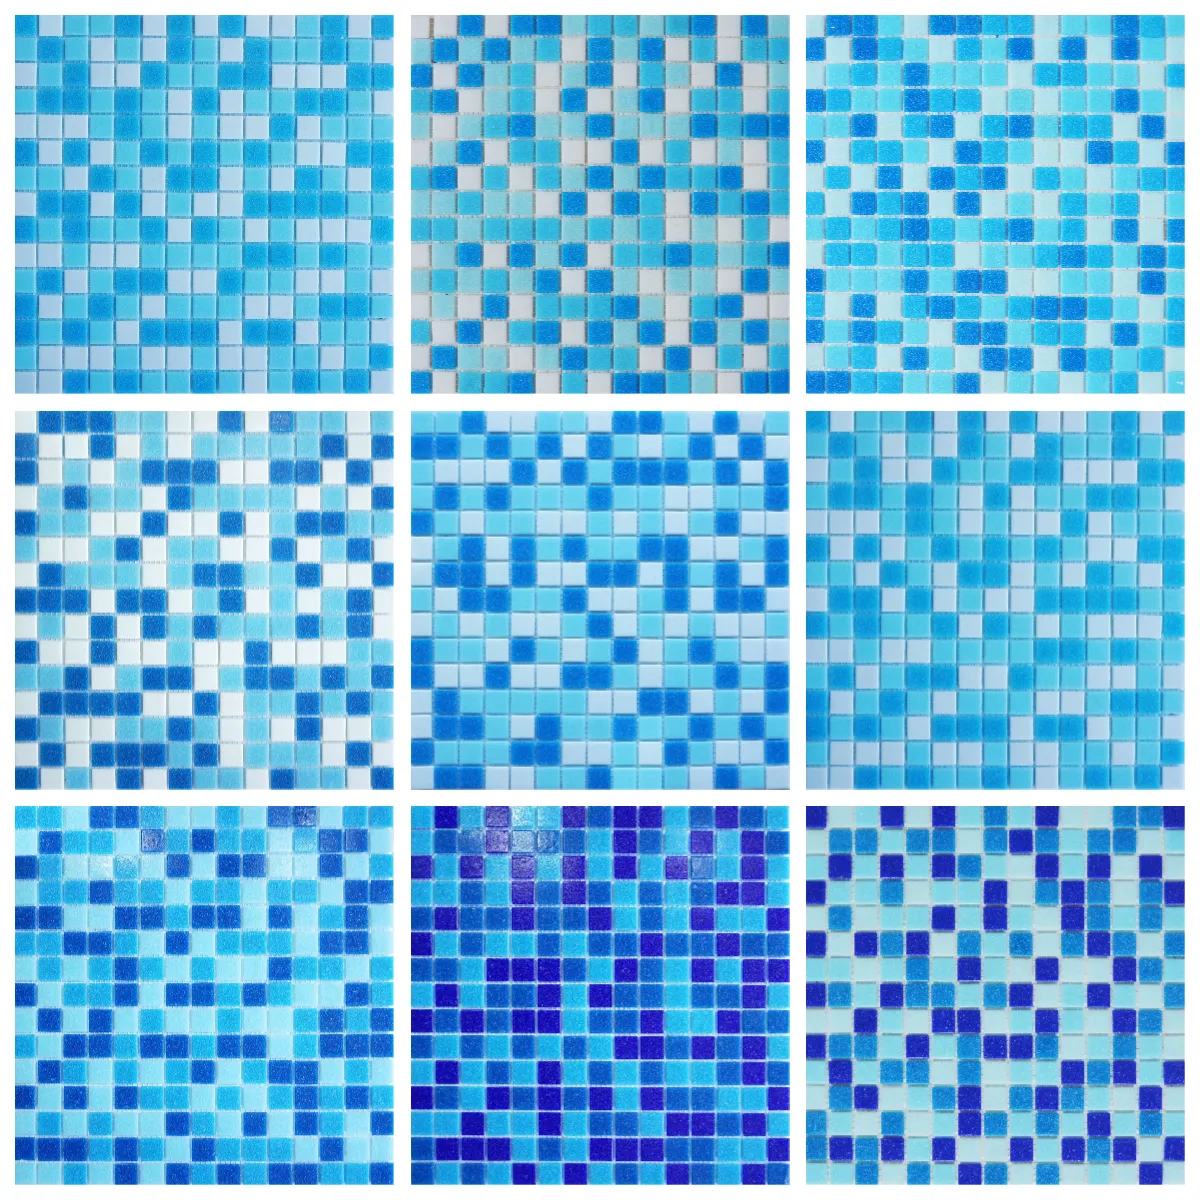 Viereckiges blaues Gemisch heiß geschmolzenes 20 × 20 mm Glas Schwimmbad-Mosaikfliese